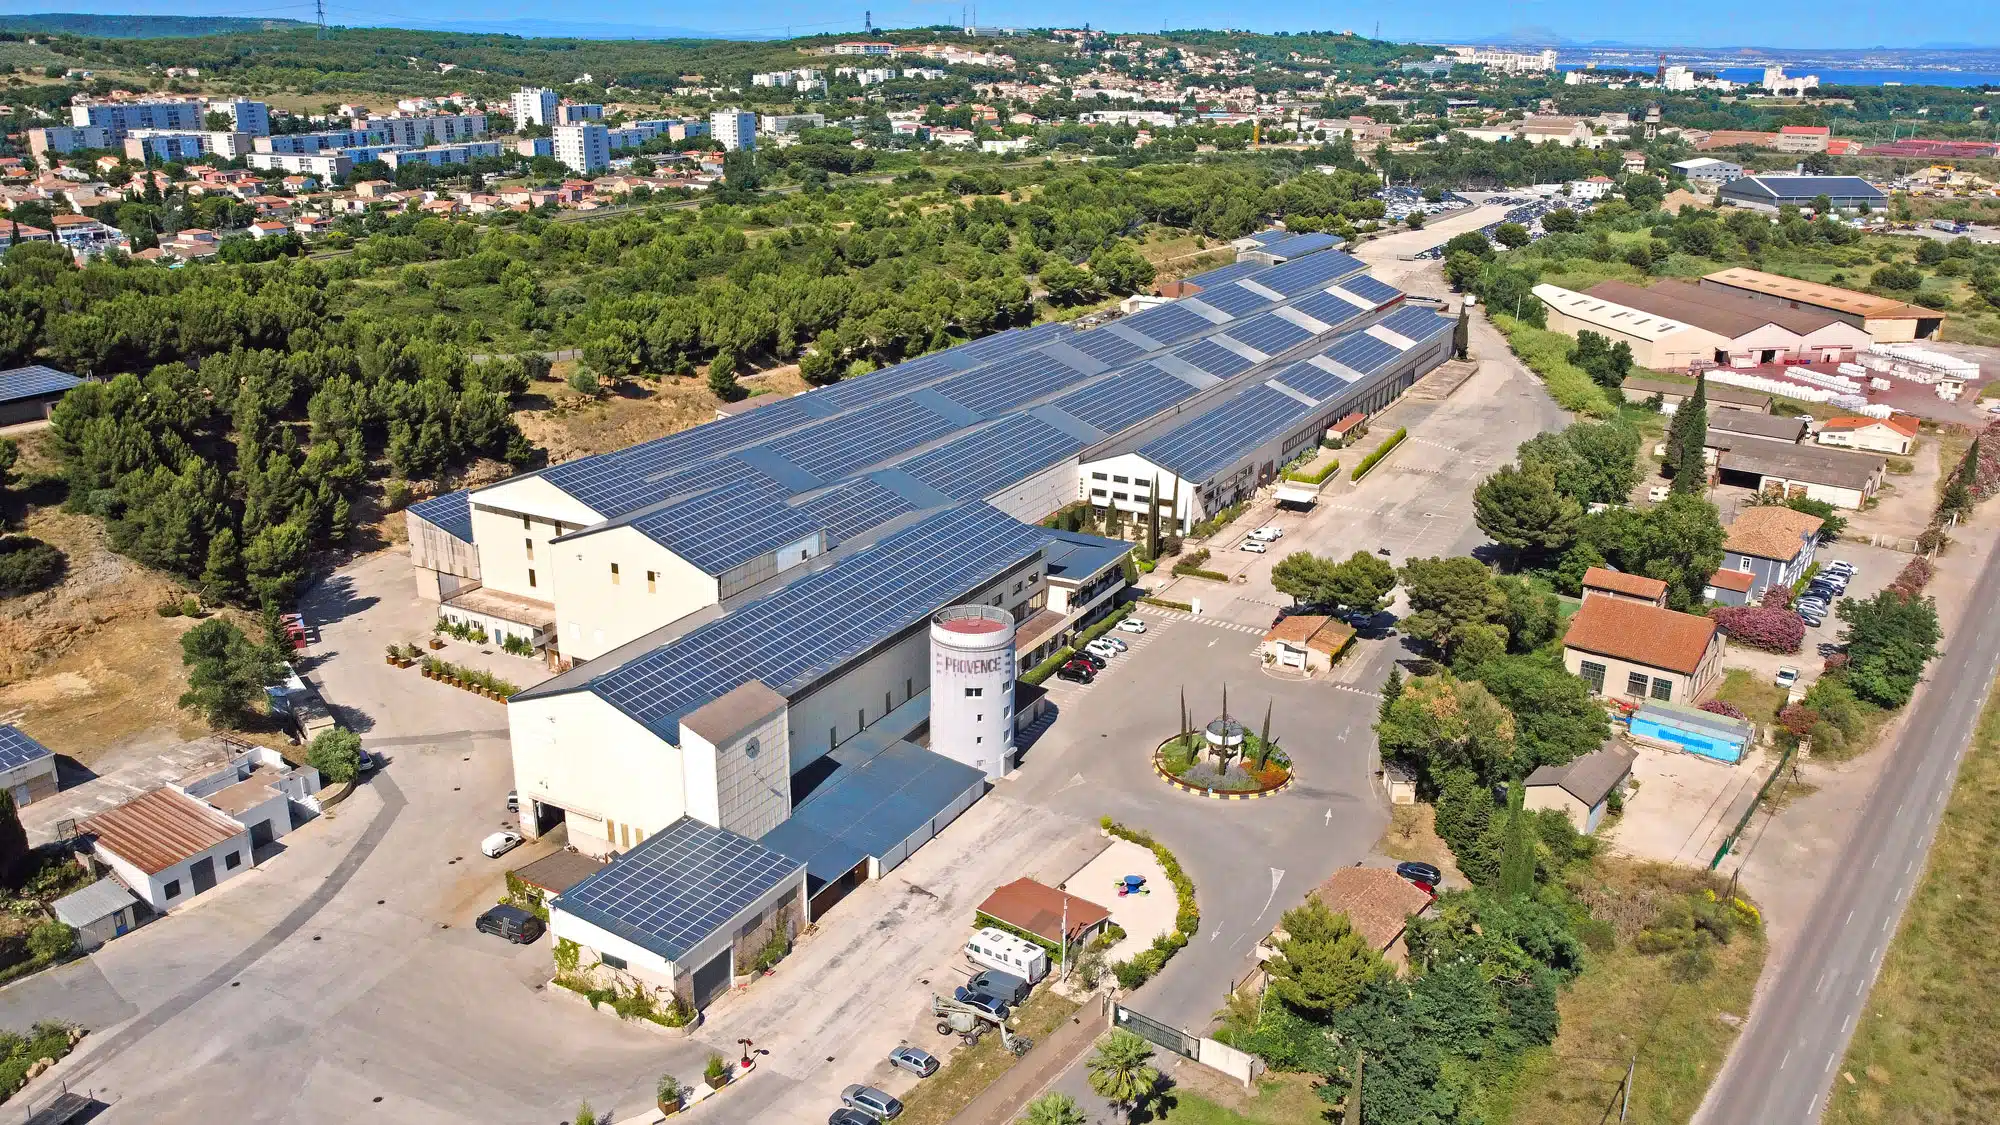 Provence Studios, Comment Provence Studios a conquis la Warner sur le tournage de La Nonne 2, Made in Marseille